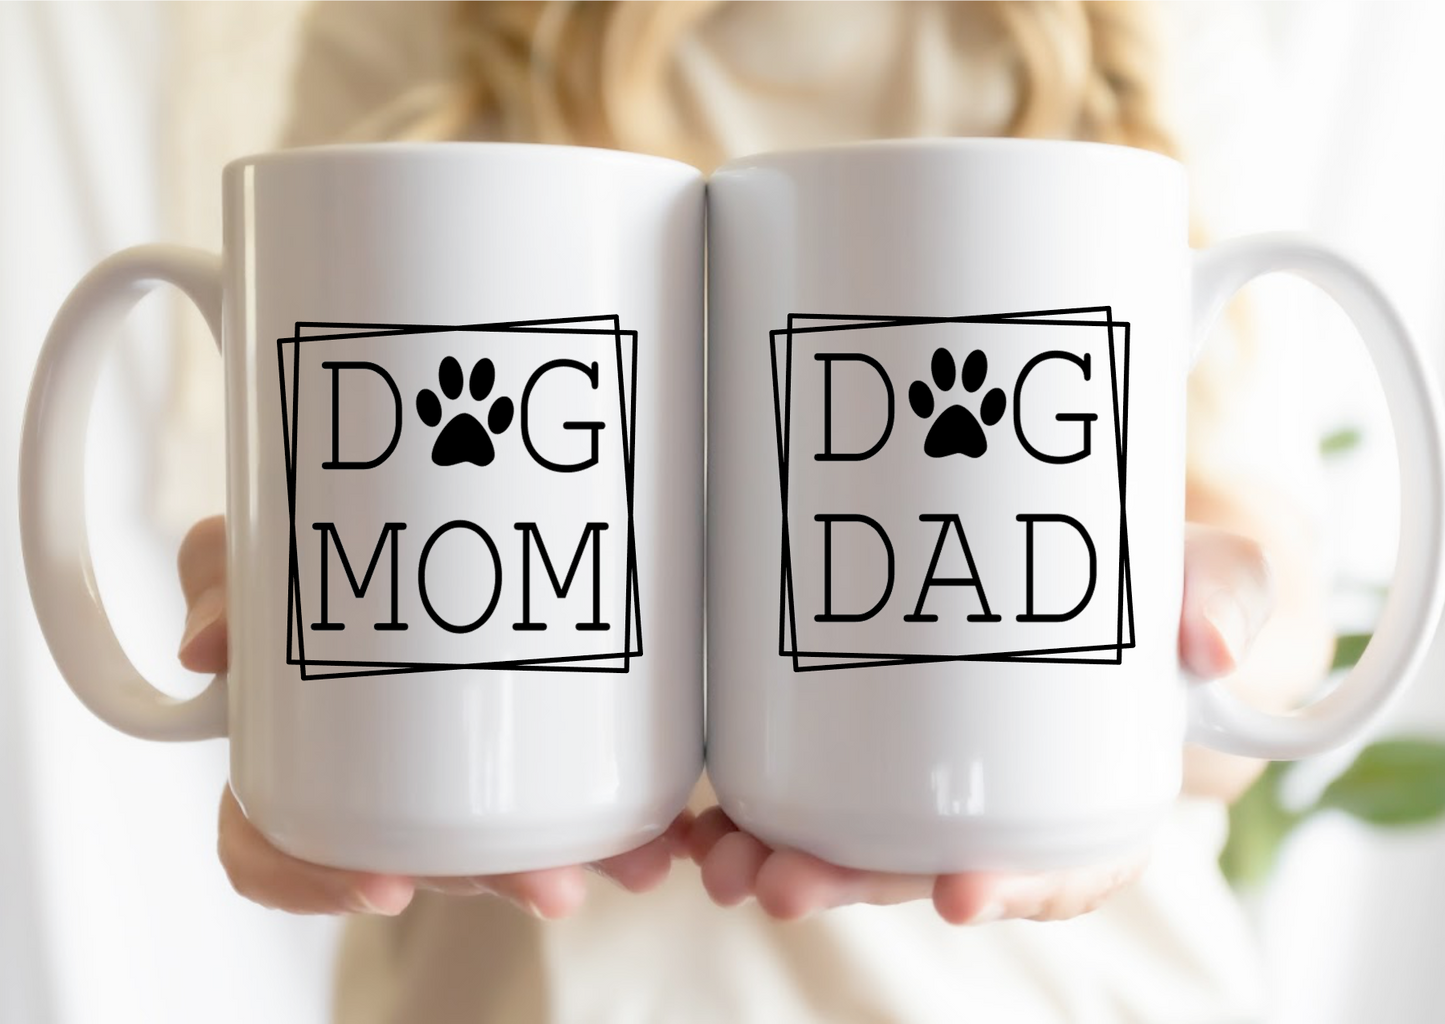 Dog Mom & Dad mugs